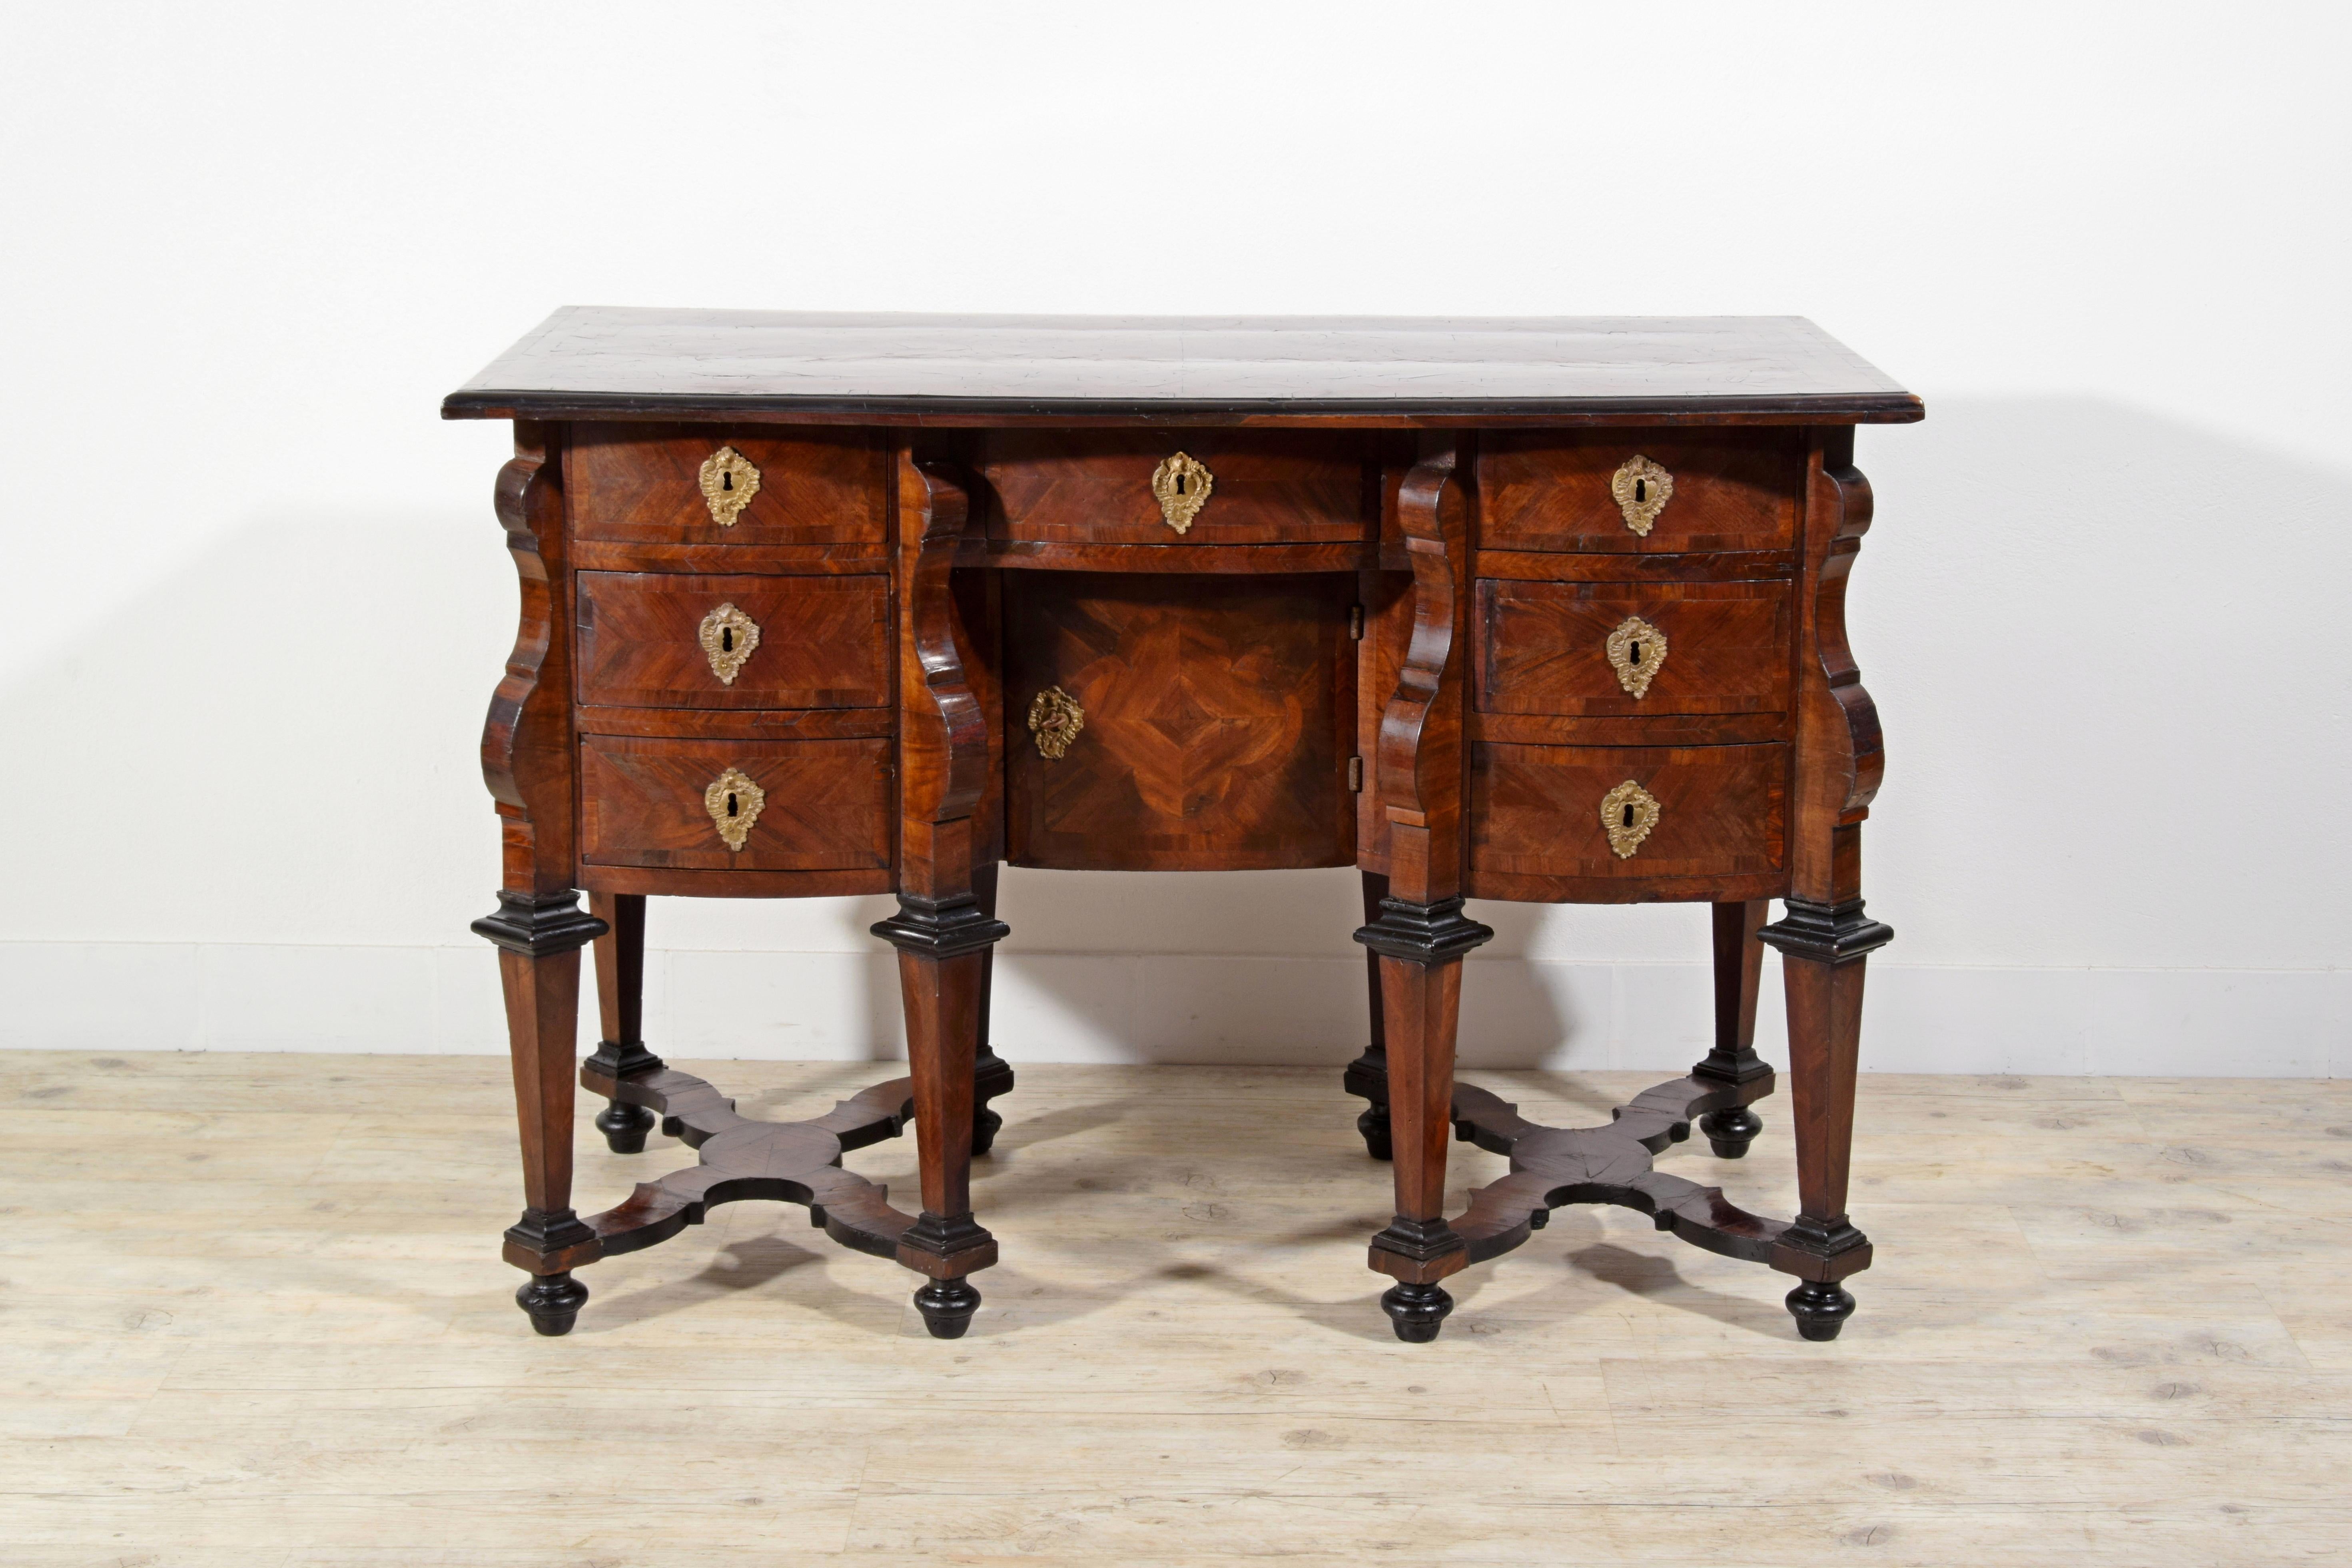 18. Jahrhundert, Italienisches Furnierholz Bureau Mazzarina
Dieser Mazzarina-Schreibtisch wurde in der Barockzeit, im frühen achtzehnten Jahrhundert, in Turin hergestellt, inspiriert durch die Modelle von Möbeln am Hof von Ludwig XIV.